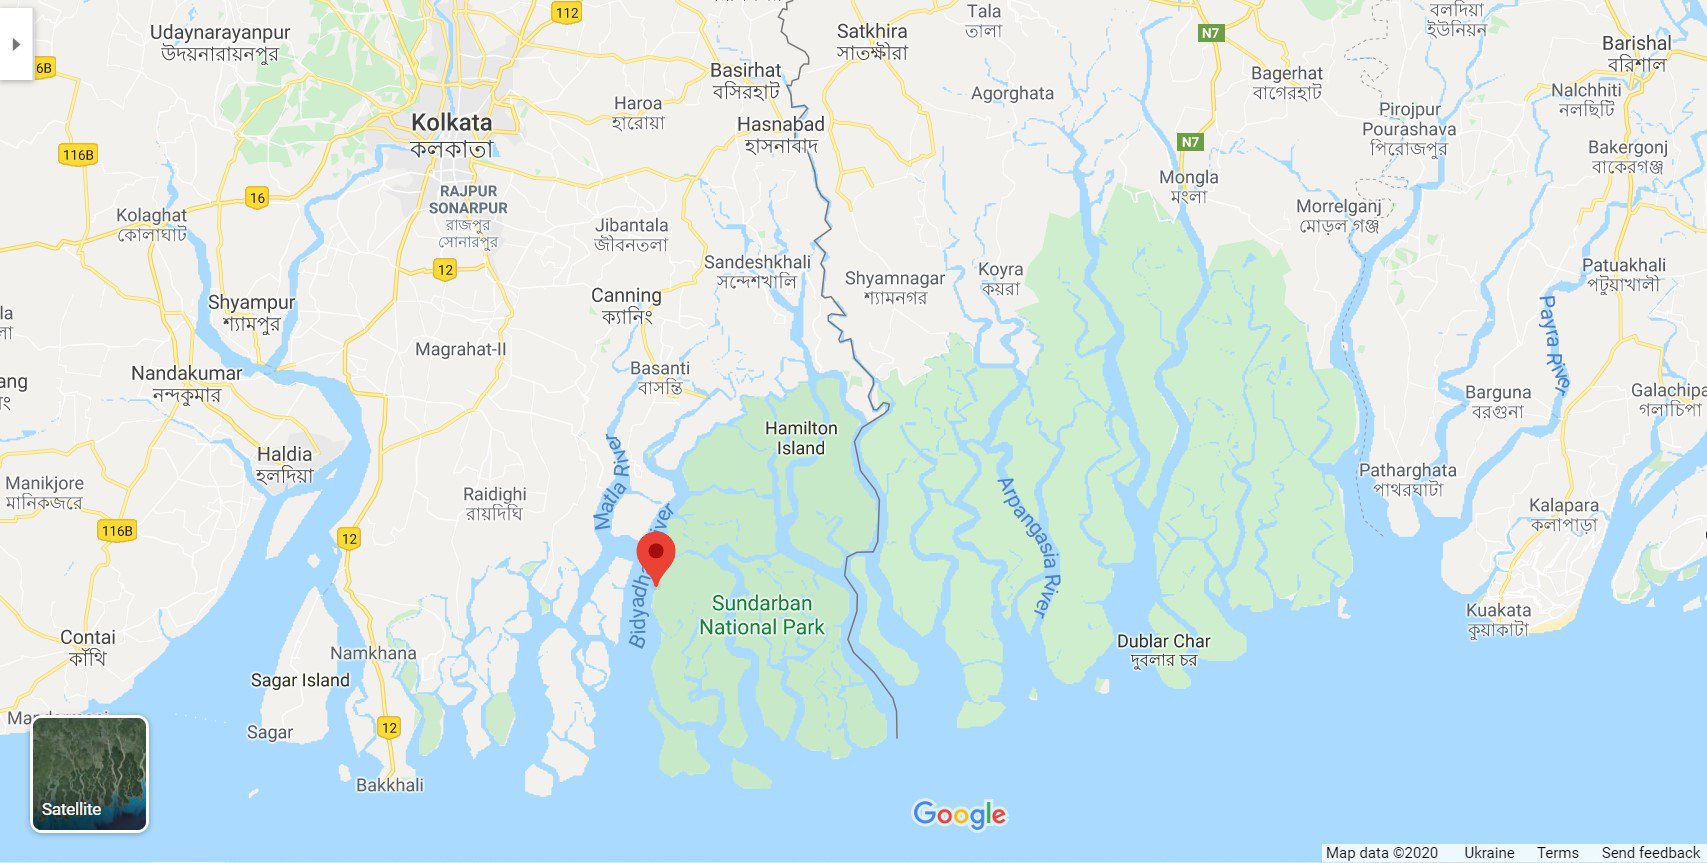 Уся зелена зона на карті — мангрова екосистема. Ліворуч угорі — Калькутта: Google Maps